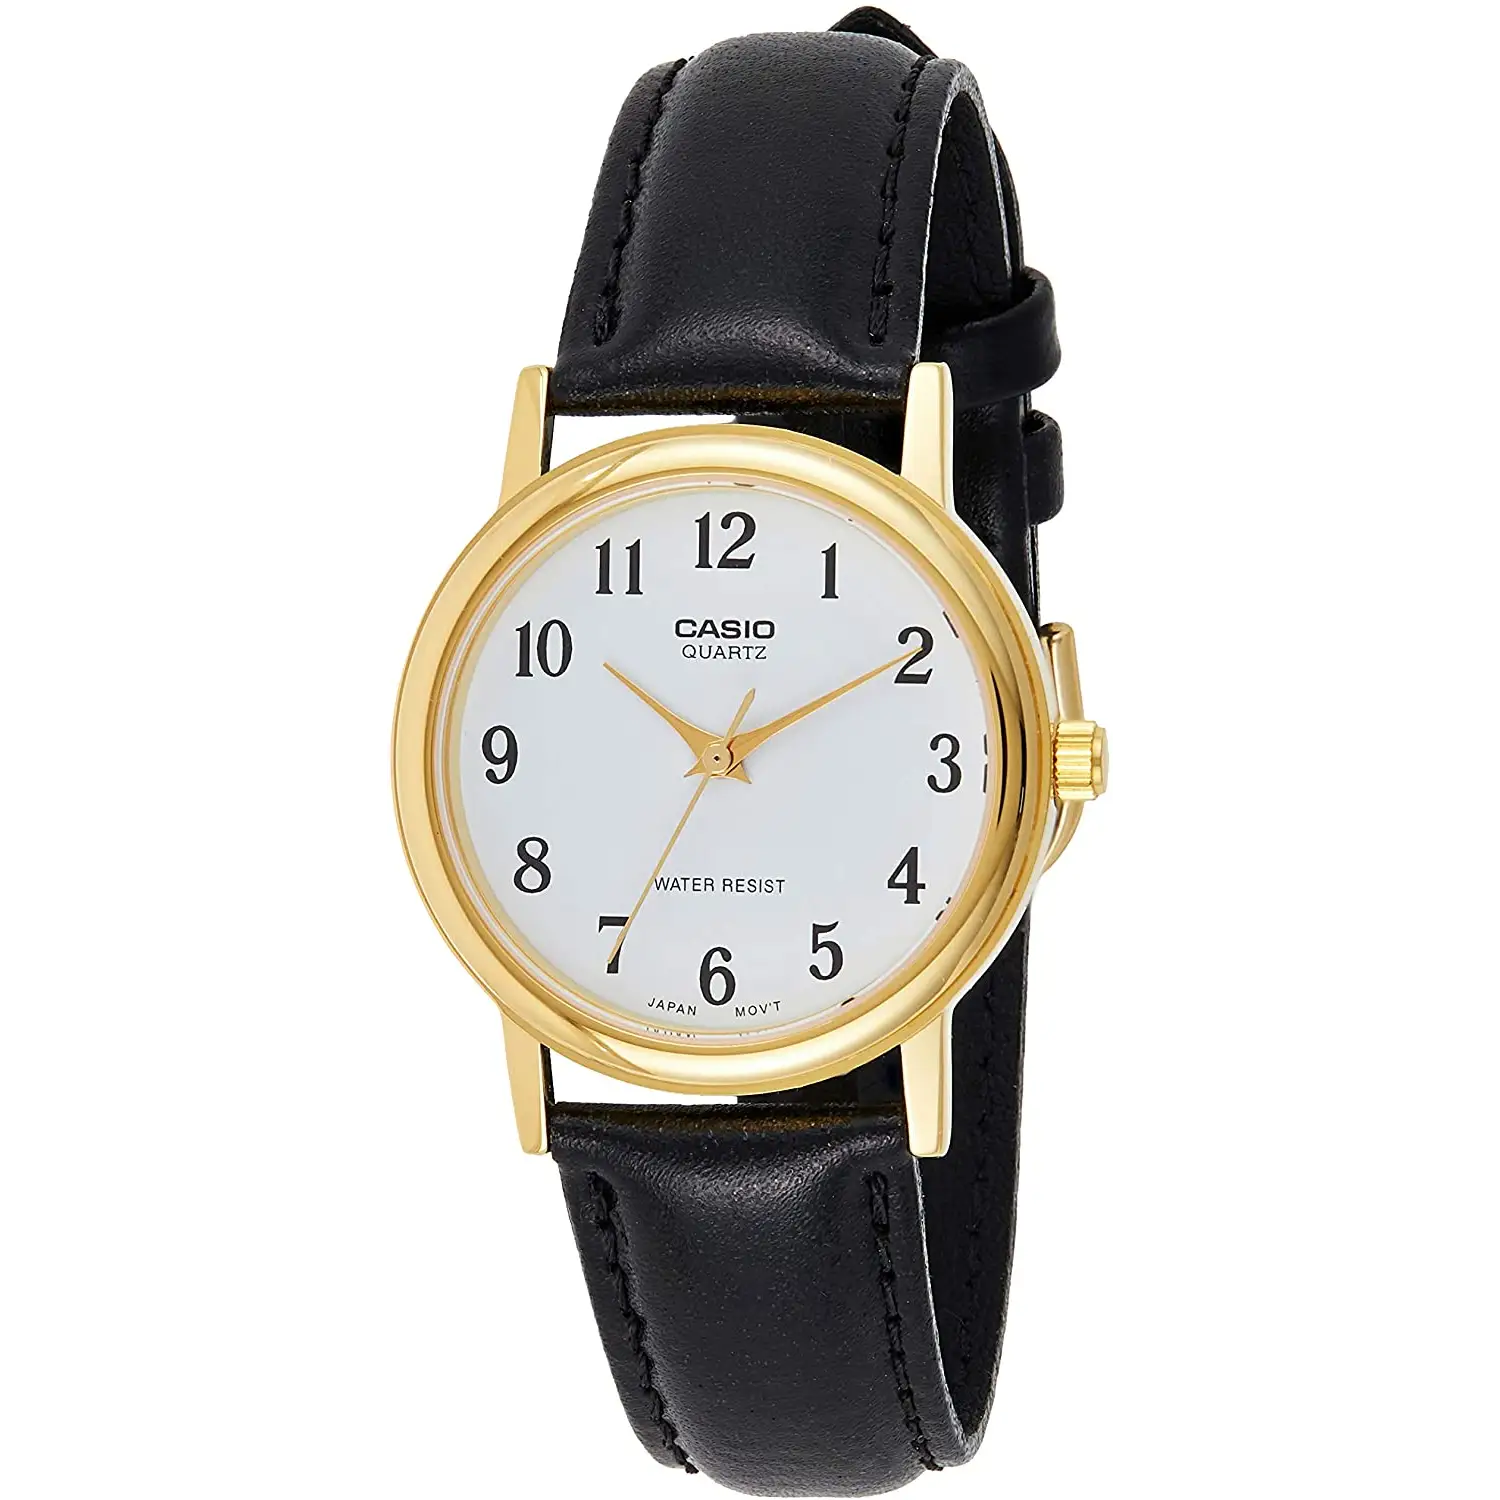 Casio General Men’s Watches Strap Fashion MTP-1095Q-7B - WW